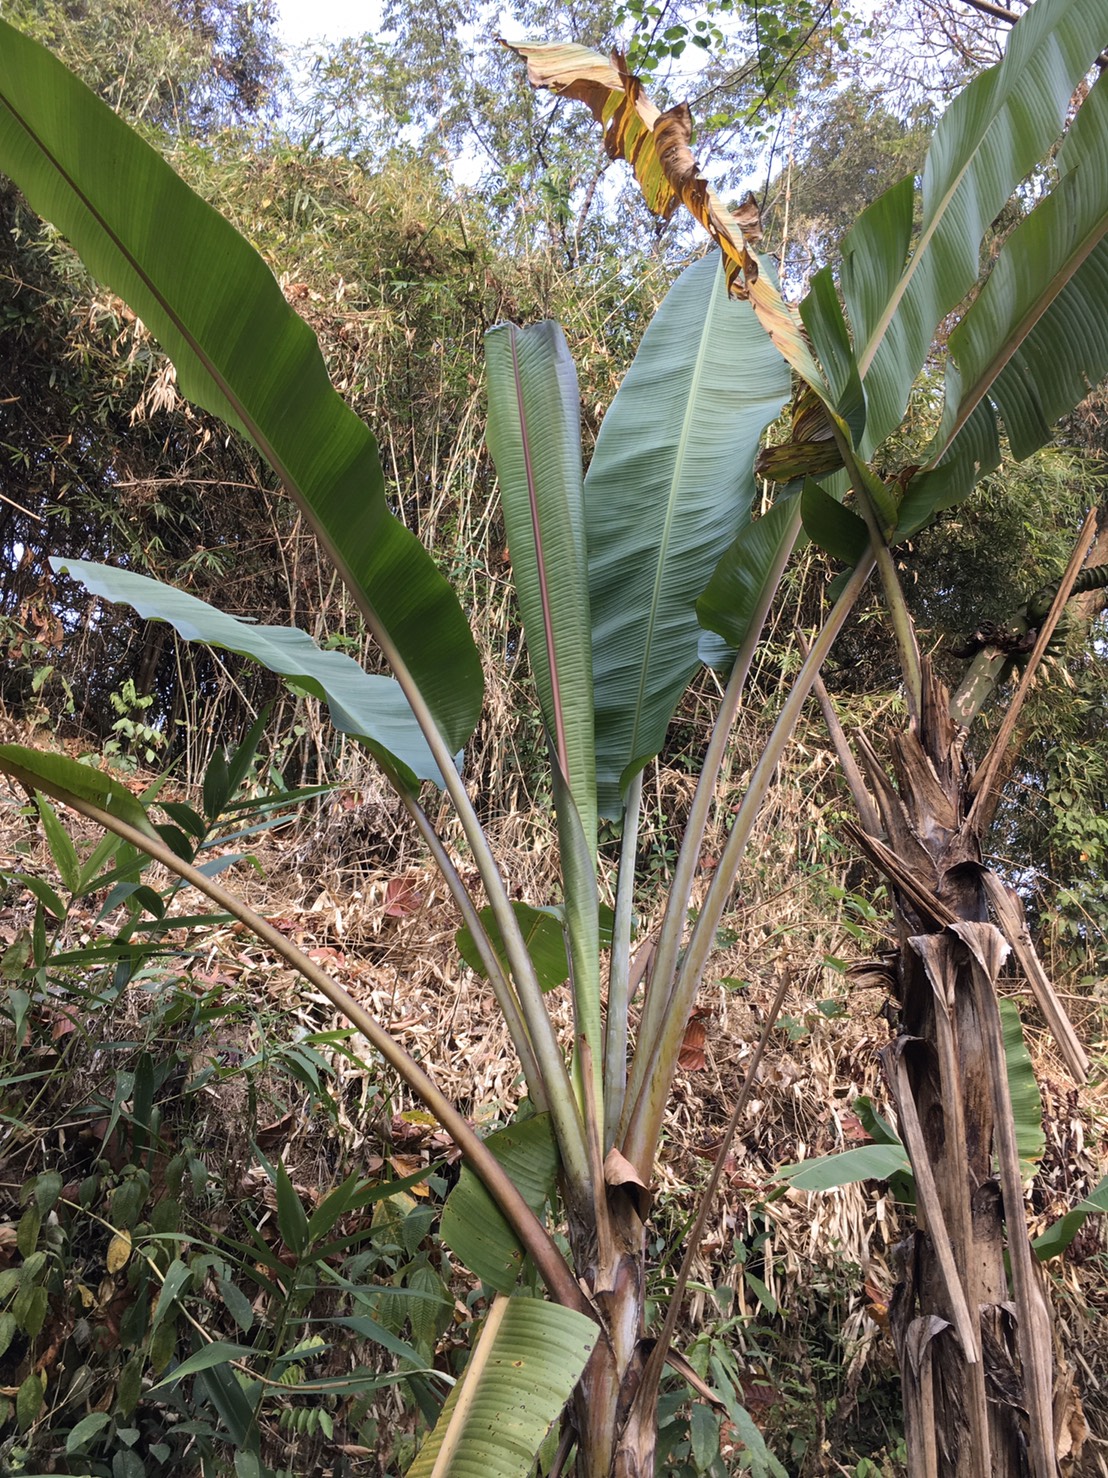 กล้วยป่าระนอง Musa acuminata Colla ssp. microcarpa  (Becc.) Simmonds (กล้วยป่าระนอง)<br/>MUSACEAE